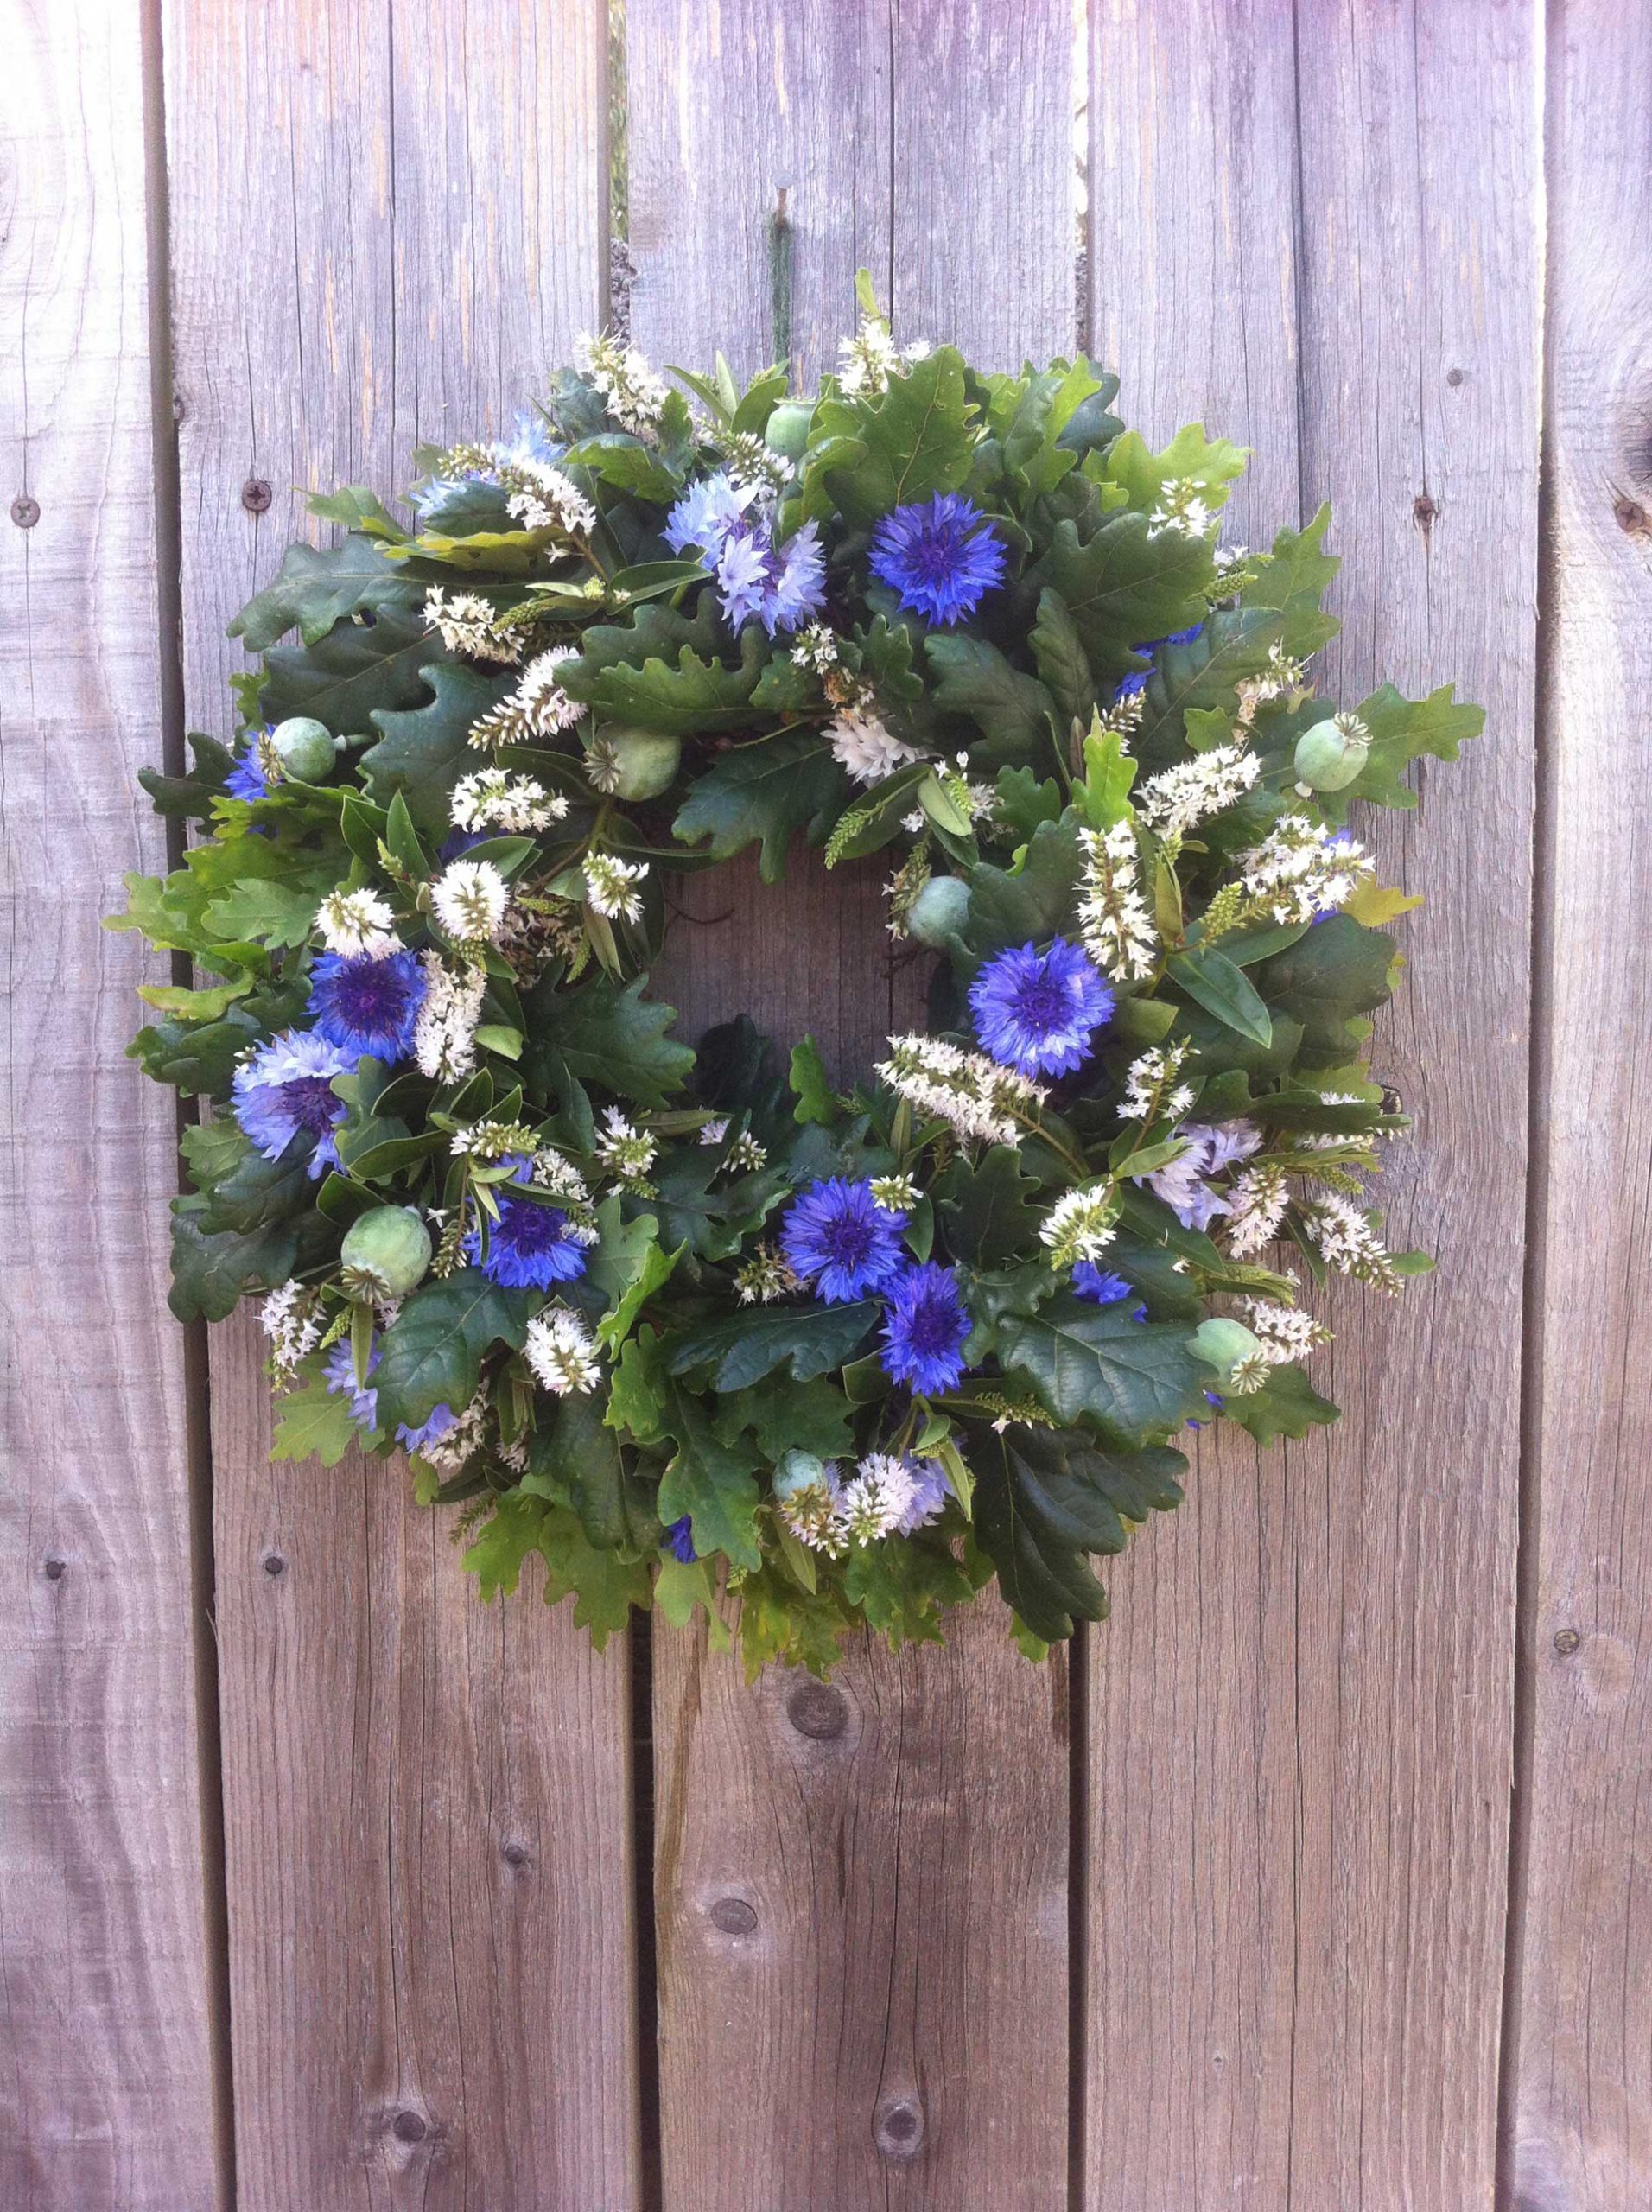 Summer wreath by Zanna from S P I N D L E in Dorset